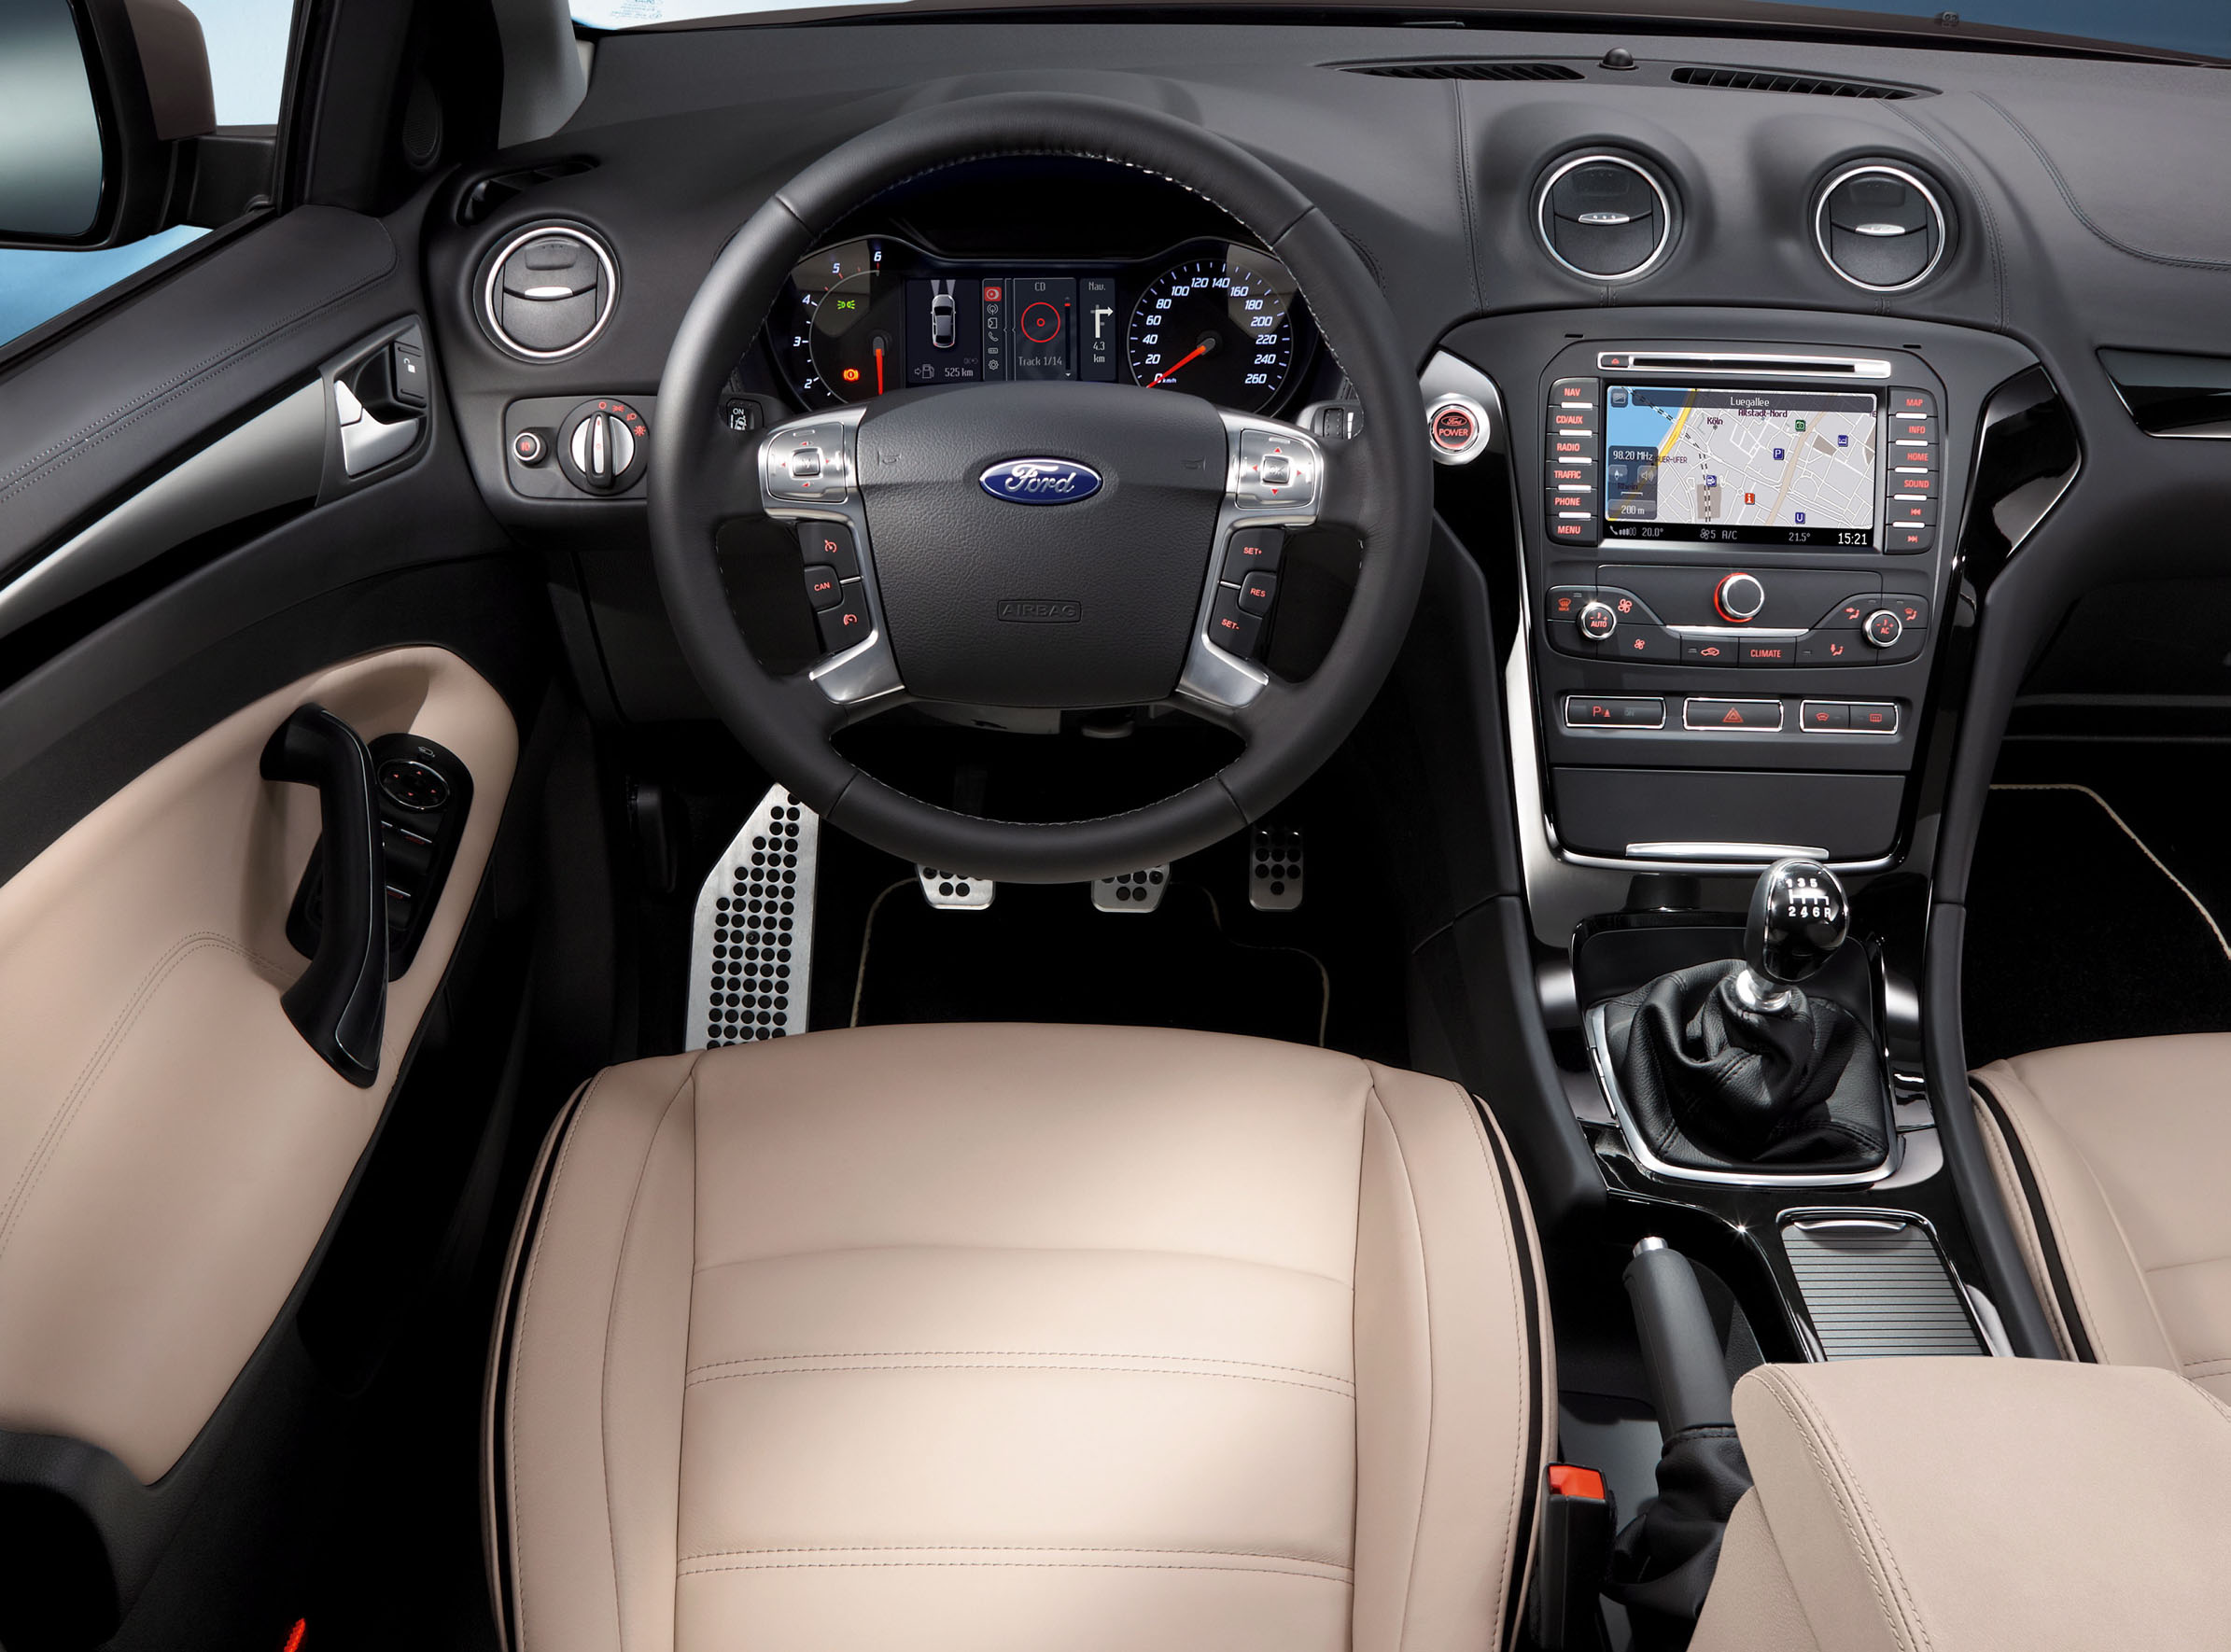 Ford Mondeo 2015, бензин, 2500 куб.см ... - Drom.ru